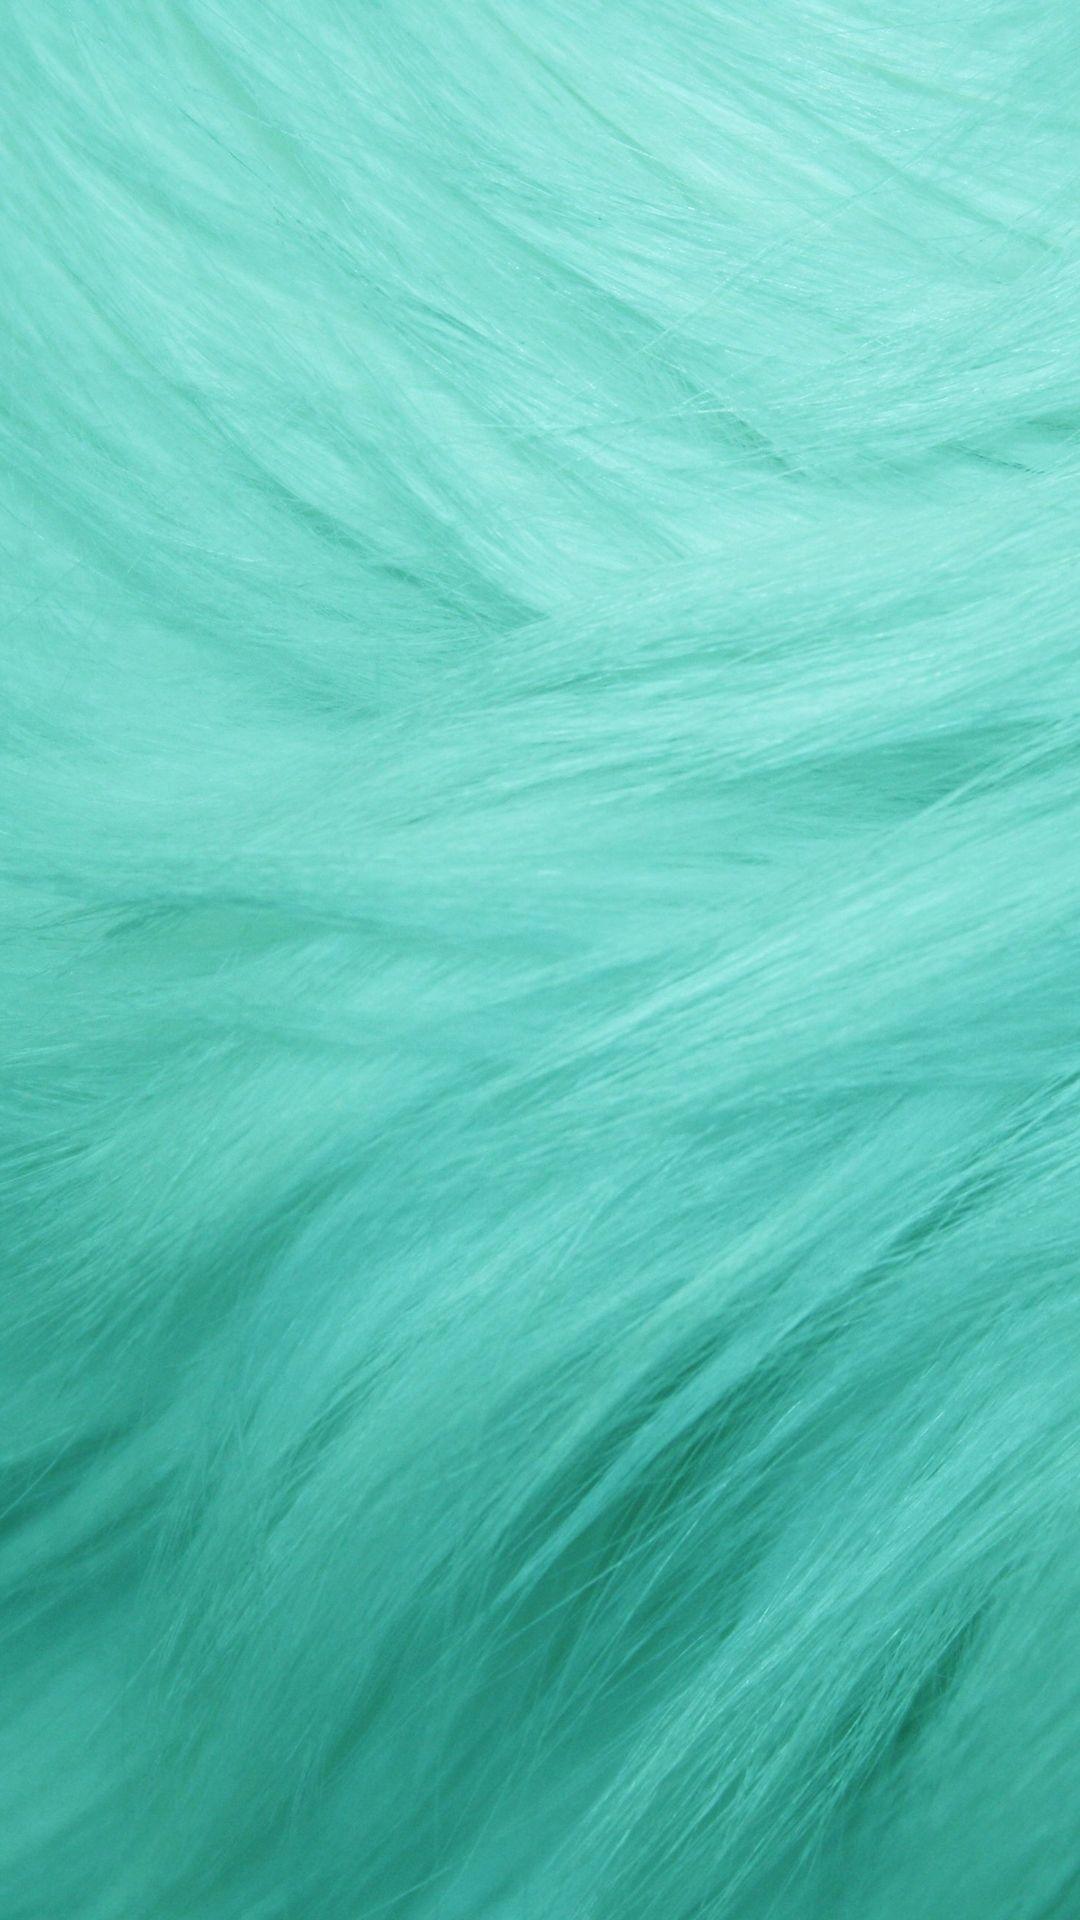 Sea Green Wallpapers - Top Free Sea Green Backgrounds ... - Màu xanh biển bao la sẽ khiến bạn có cảm giác thư giãn và thong dong như đang đứng trước bờ biển trong xanh. Những hình ảnh đẹp động lòng người với tông màu xanh của biển cả và màu xanh lá cây của cây cỏ dành cho bạn. Nhấn vào hình ảnh để đem bầu không khí biển cả đến ngay tận nơi.